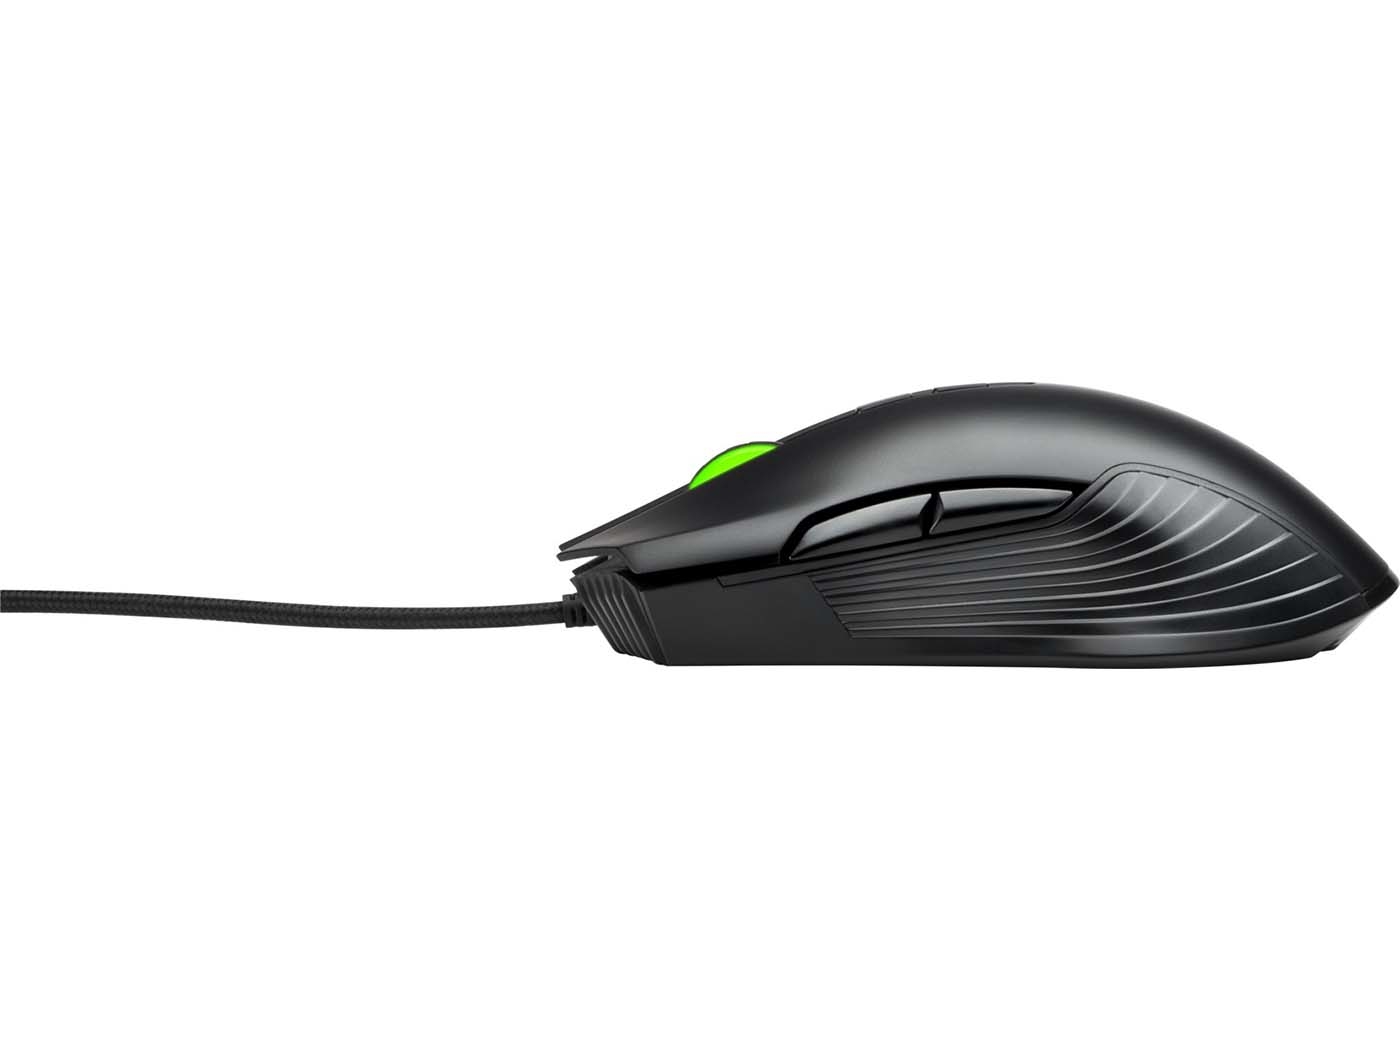 Mouse HP Alámbrico X220 Pavilion Gaming